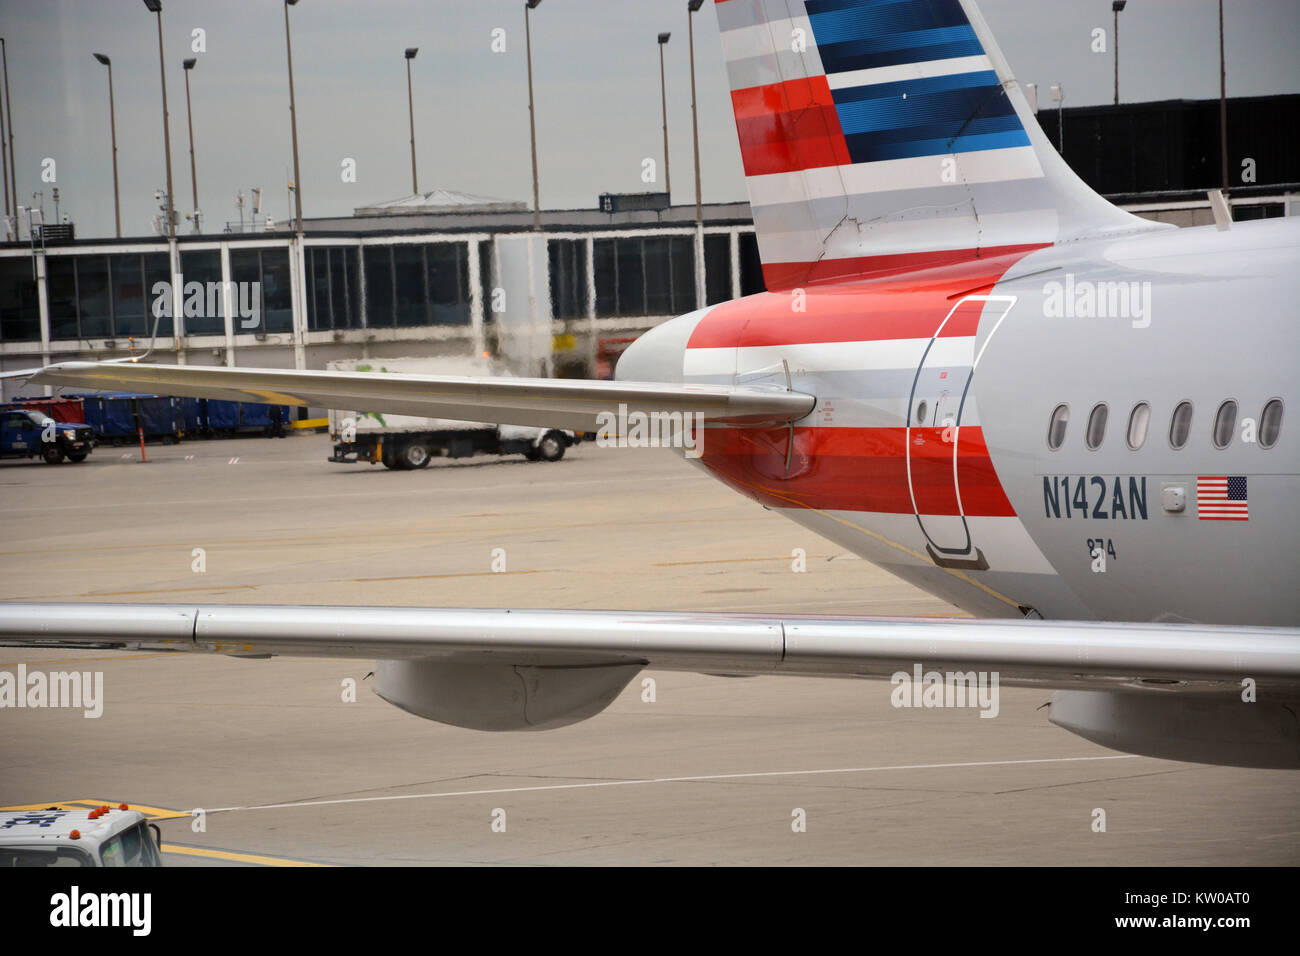 D'échappement chaud fausse l'air autour de la queue d'un avion d'American Airlines la préparation pour le départ de l'aéroport international O'Hare à Chicago Banque D'Images